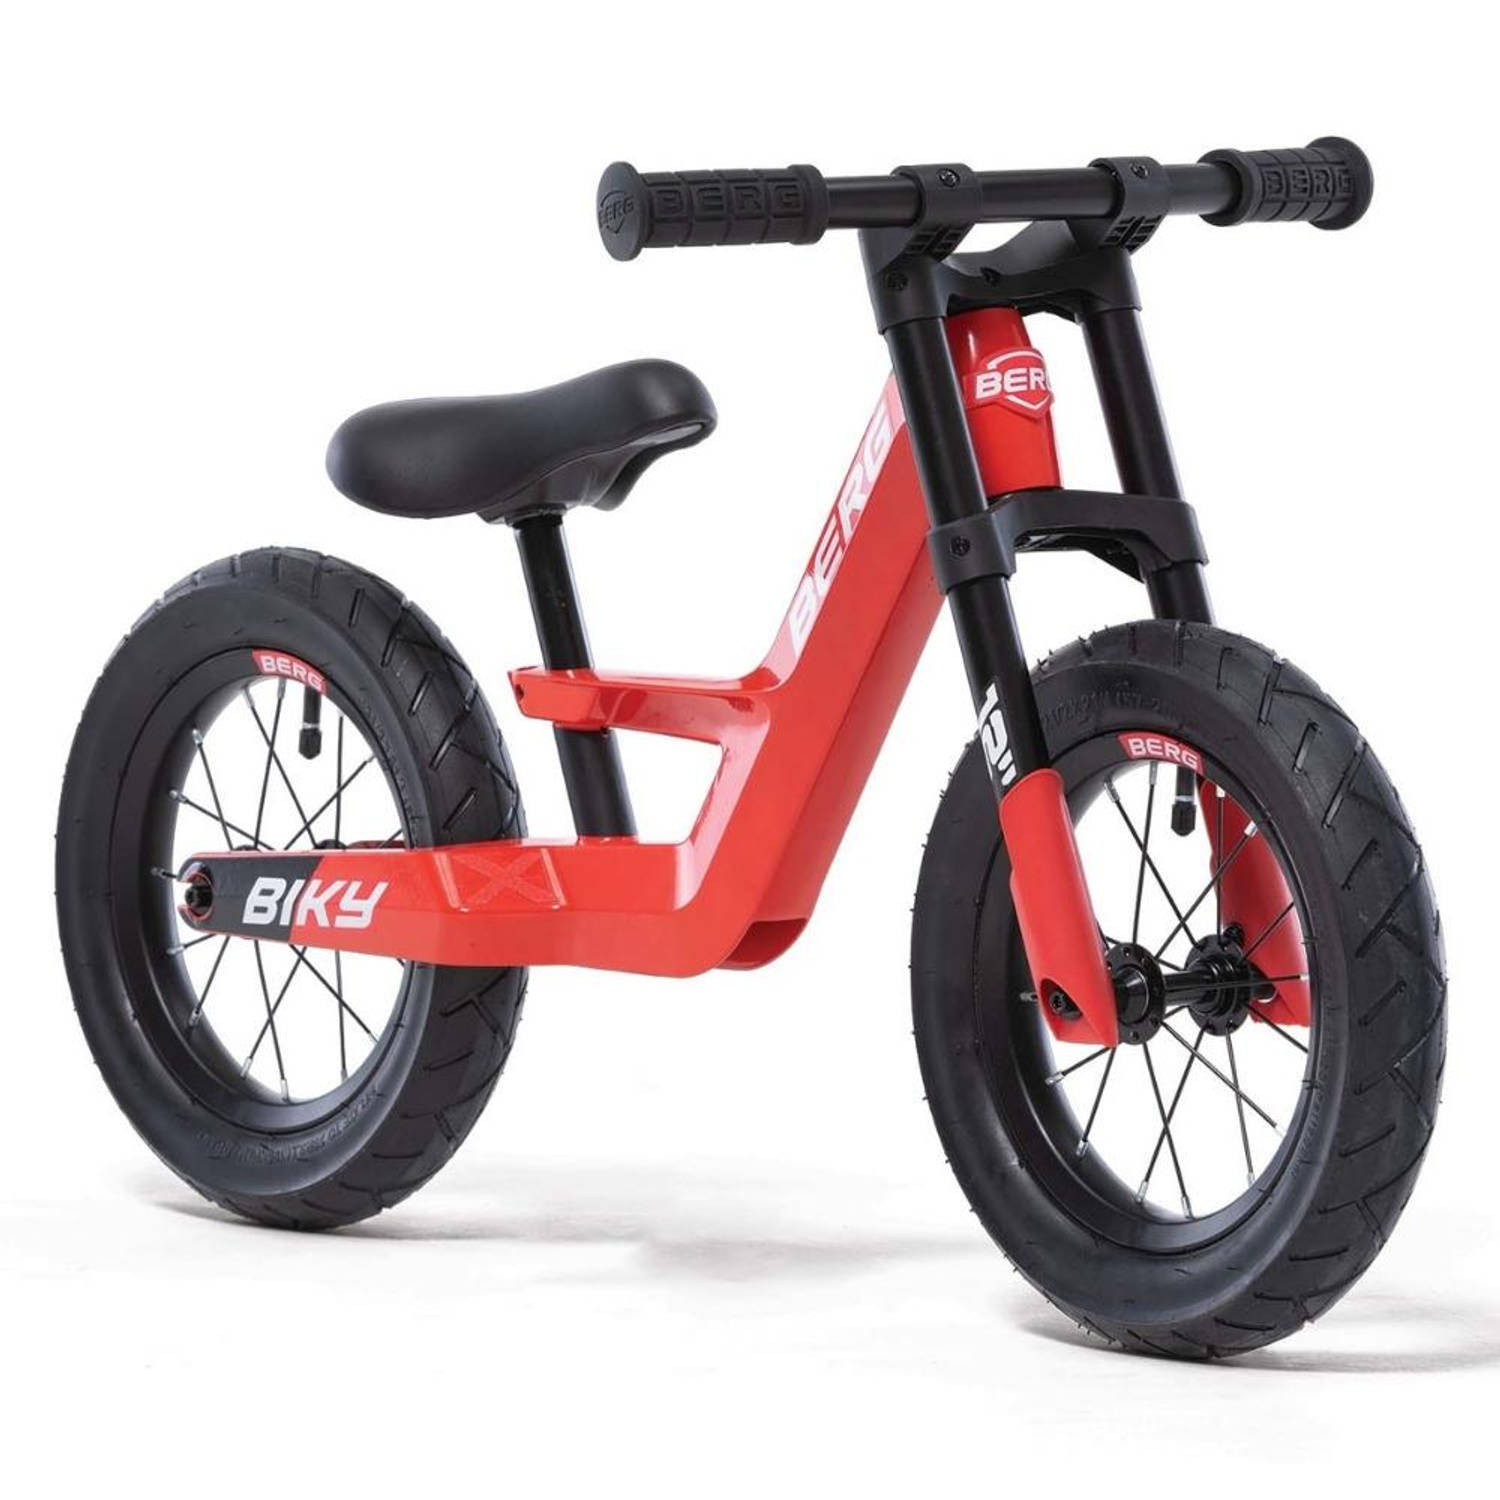 BERG Biky City Loopfiets - Rood - Lichtgewicht frame van magnesium - 2 tot 5 jaar